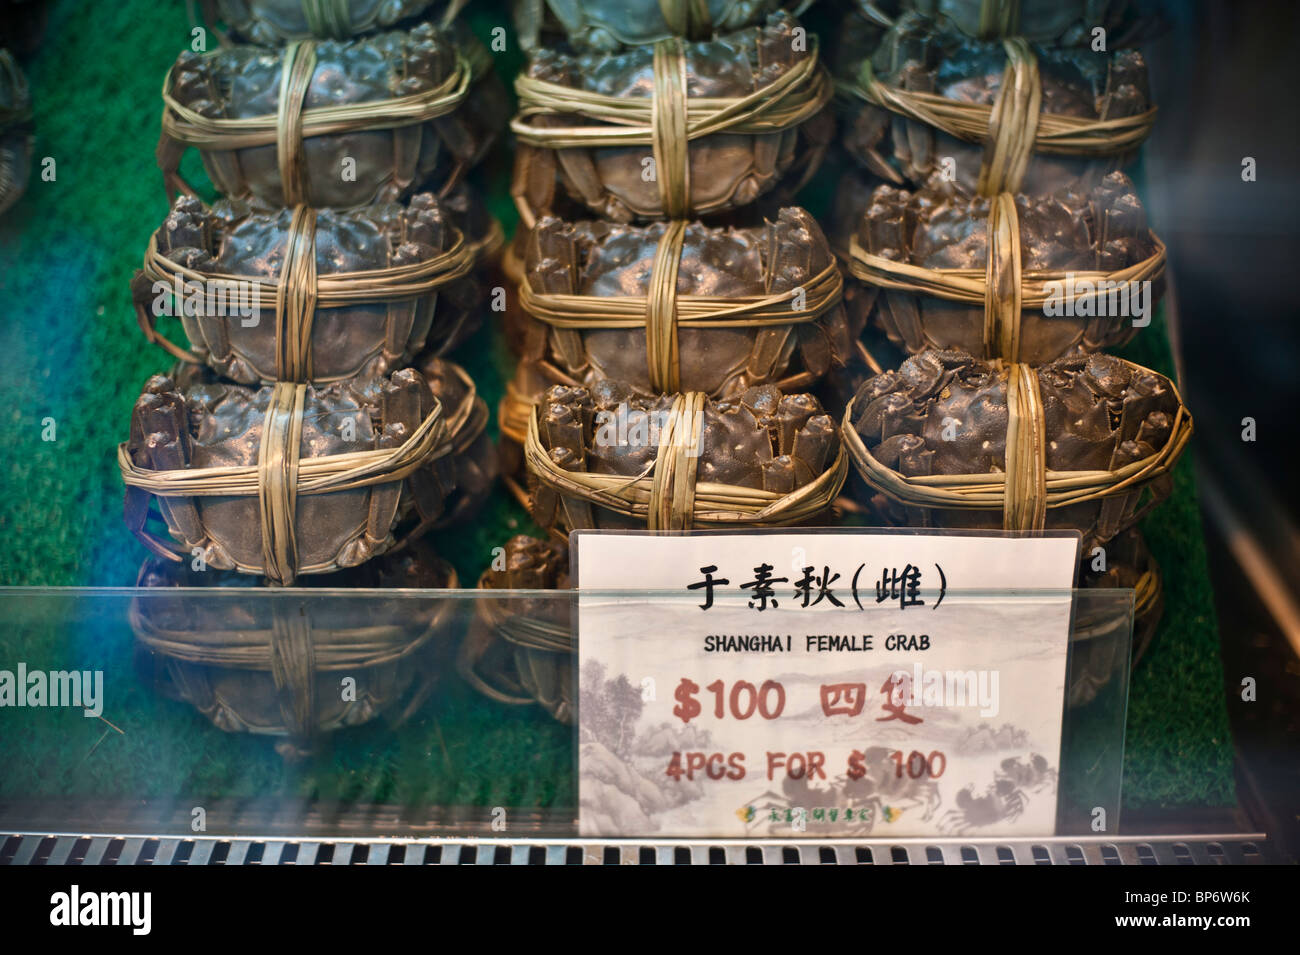 El cangrejo guante chino es un famoso manjar en Shanghai y Hong Kong cocina y es muy apreciado por las huevas de cangrejo hembra. Foto de stock